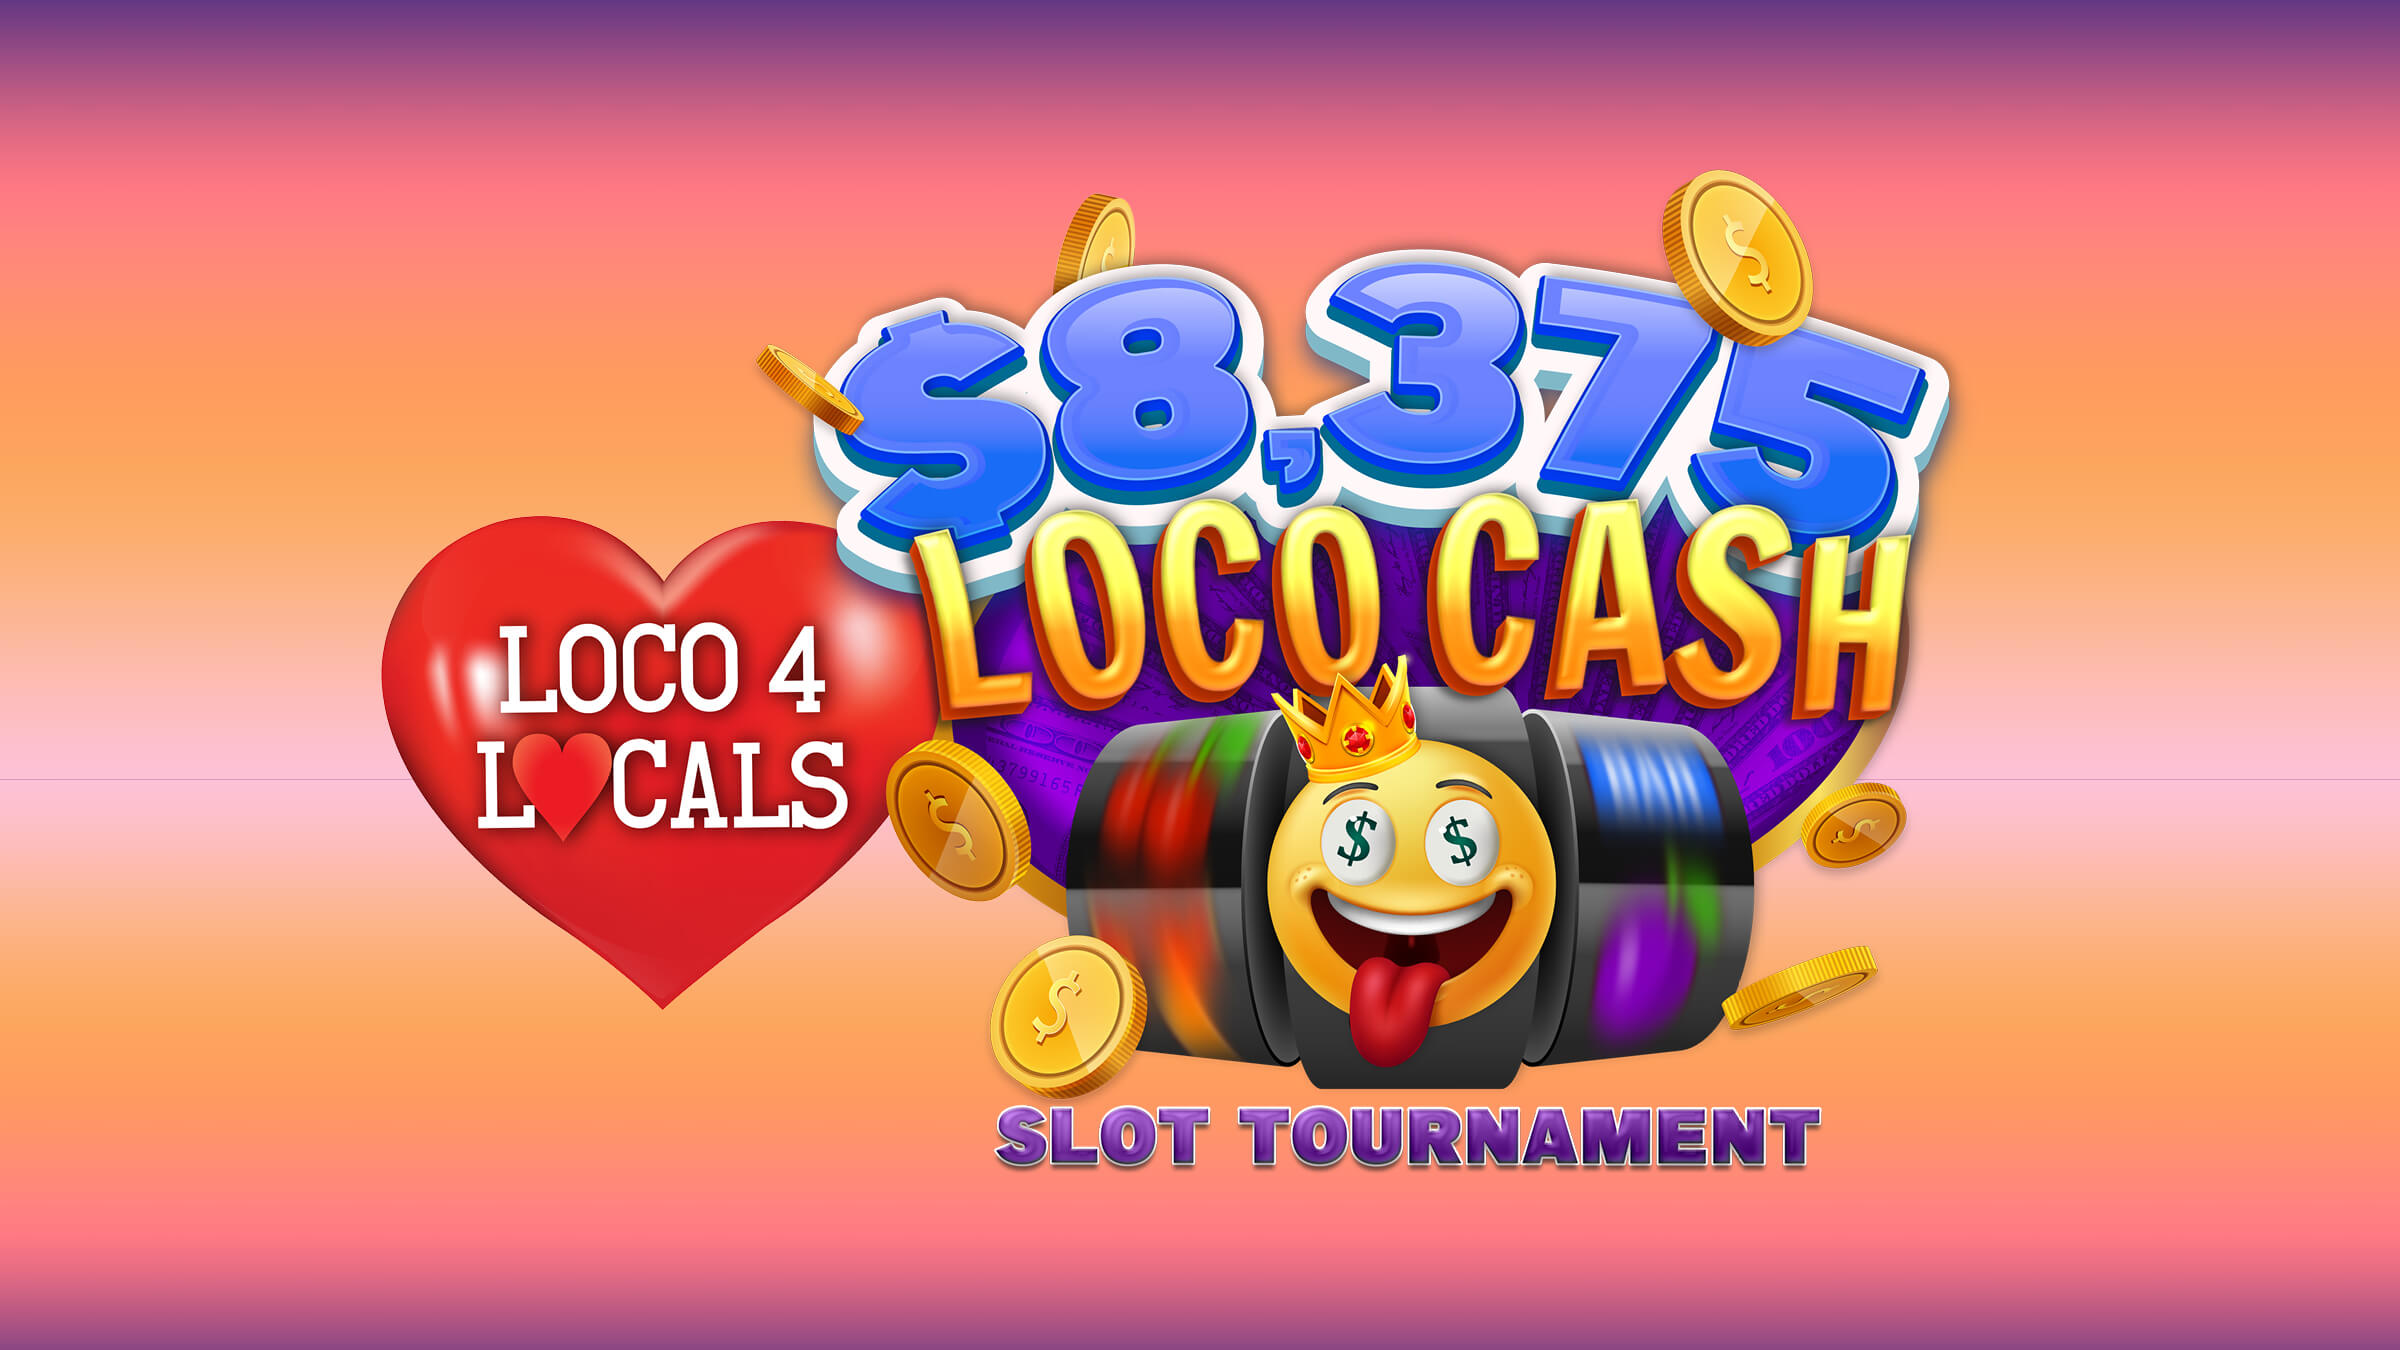 Loco 4 Locals – $8,375 Loco Cash Slot Tournament